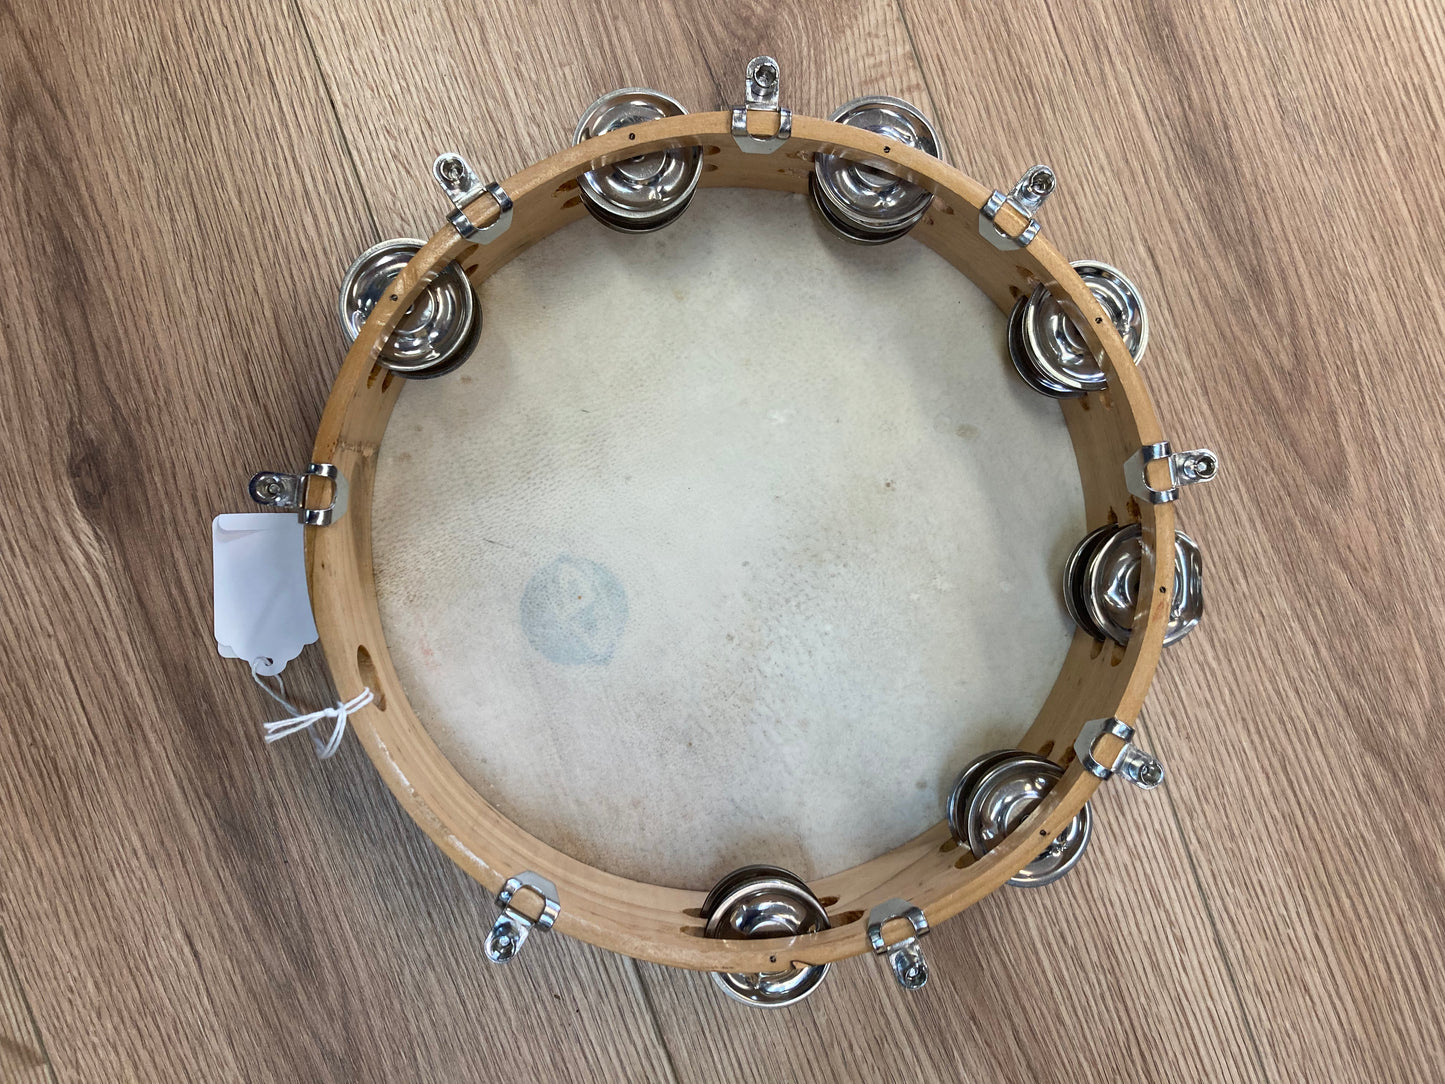 Cosmic Percussion CP Tambourine, 8", 1950's $24.95